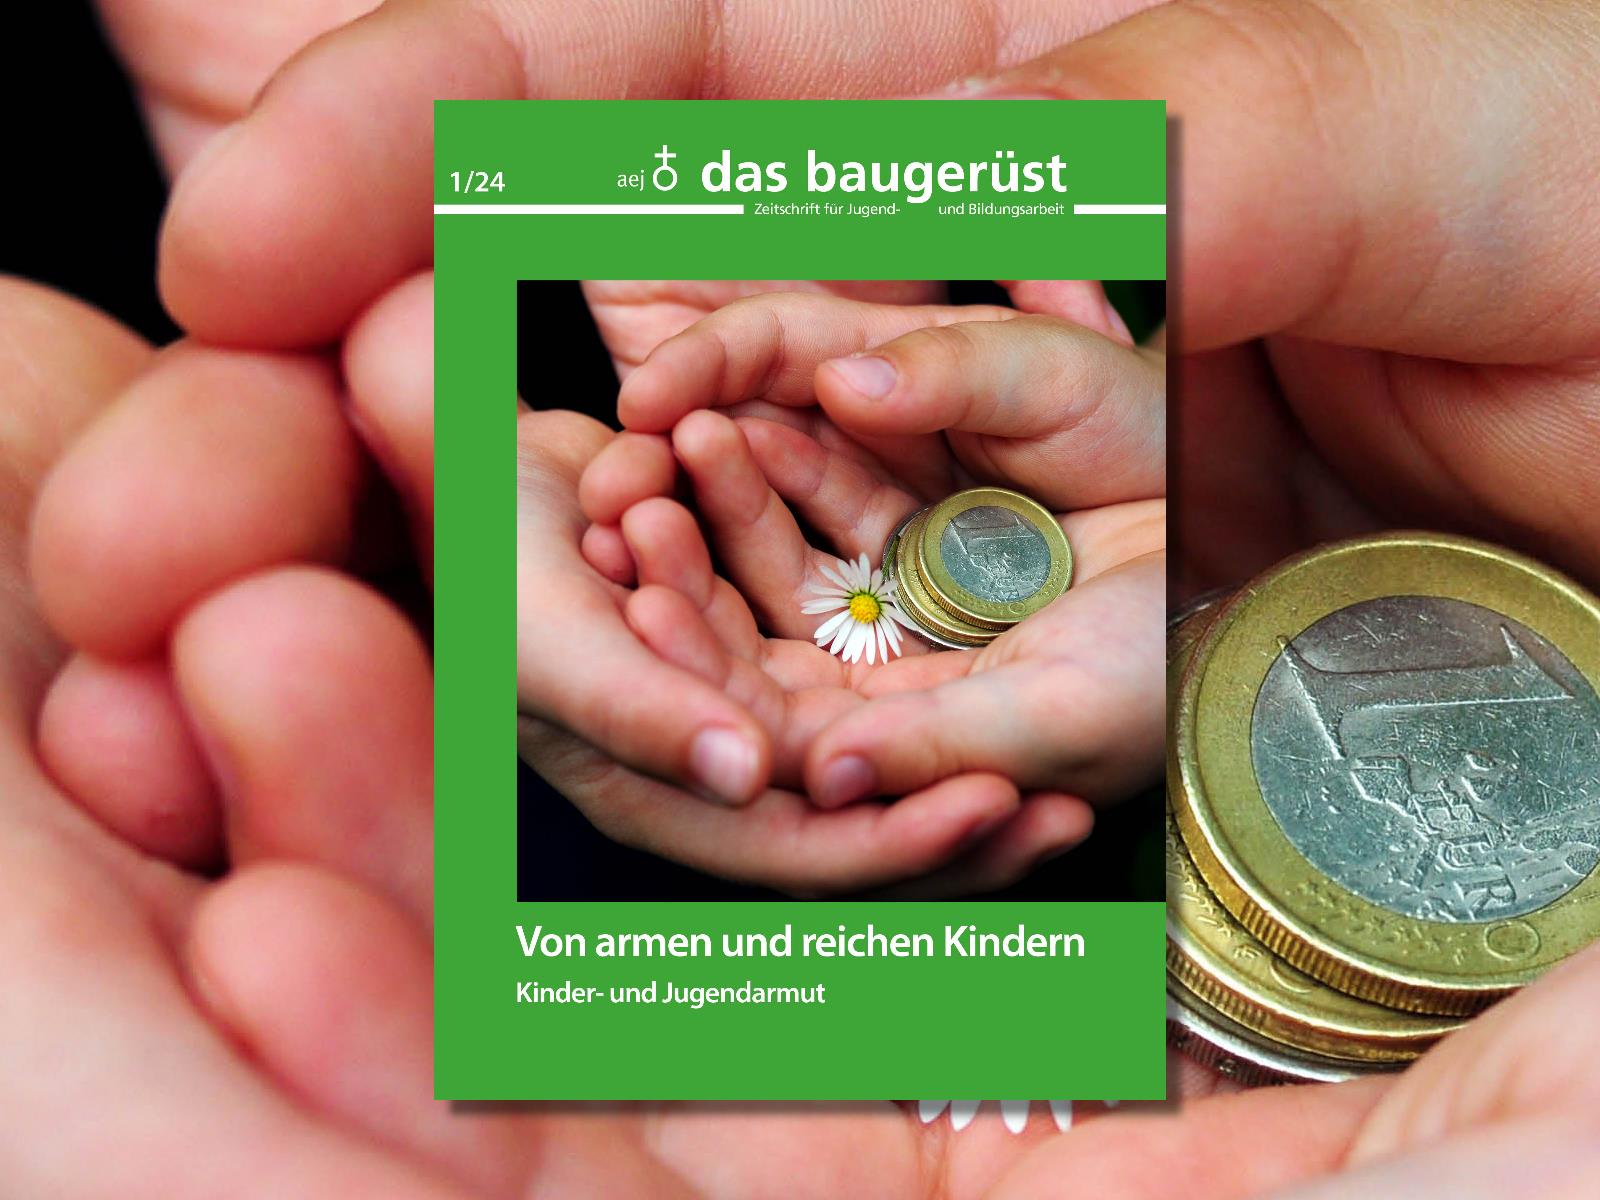 Titelseite der aktuellen baugerüst Ausgabe: Grundfarbe ist ein kräftiges grün. Auf der Titelseite sind Hände abgebildet, in denen Euromünzen und ein Gänseblümchen liegen